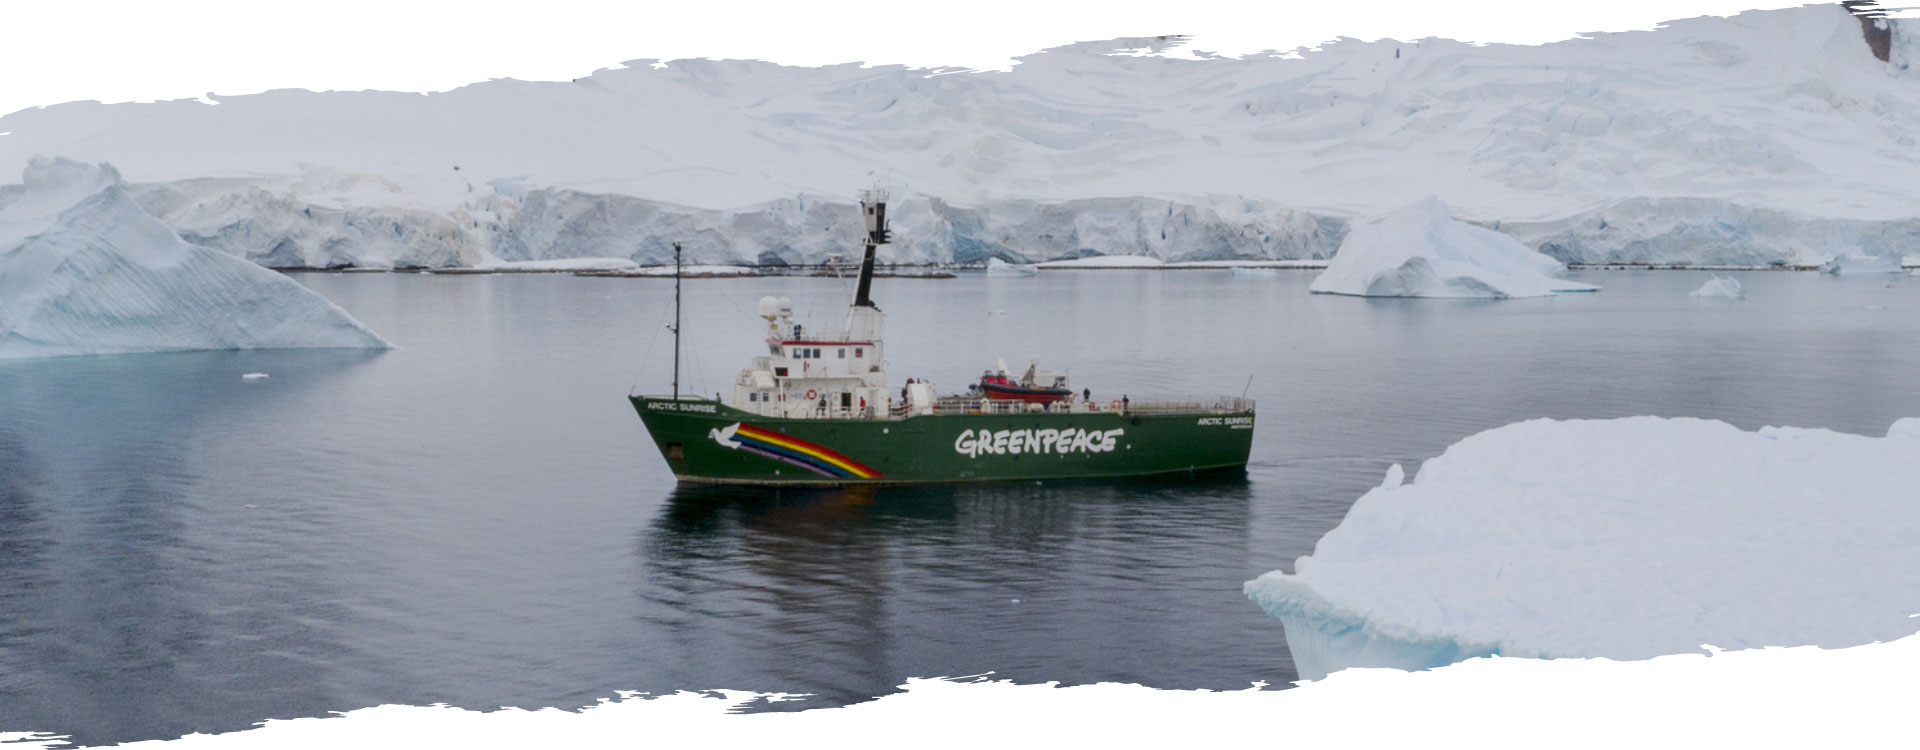 l'Artic Sunrise, bateau de la flotte Greenpeace, dans une baie au milieu de glaciers